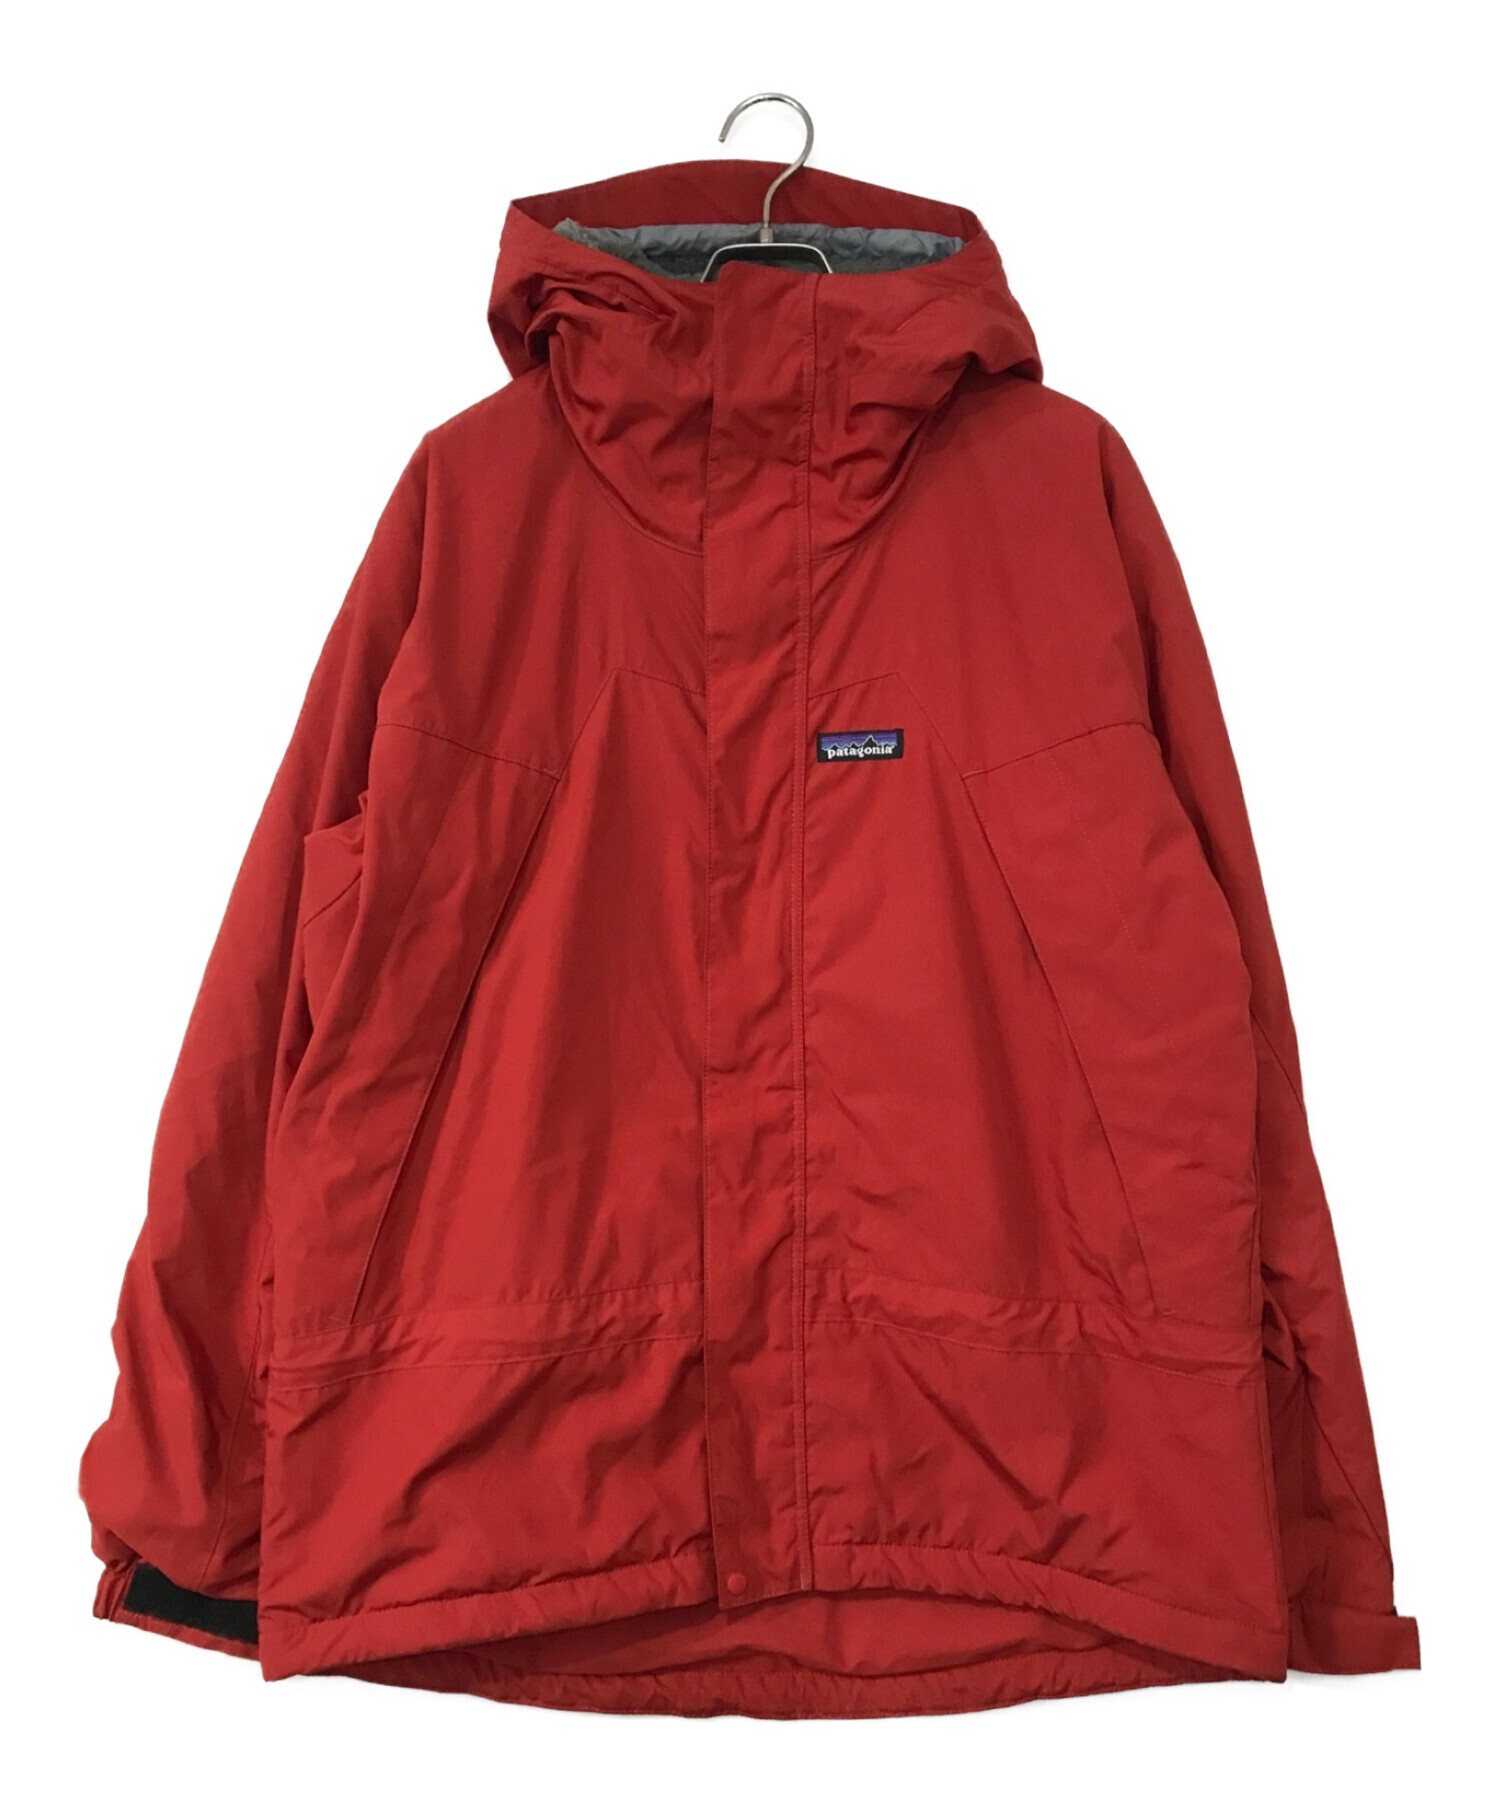 10,560円Patagonia Infurno Jacket  S